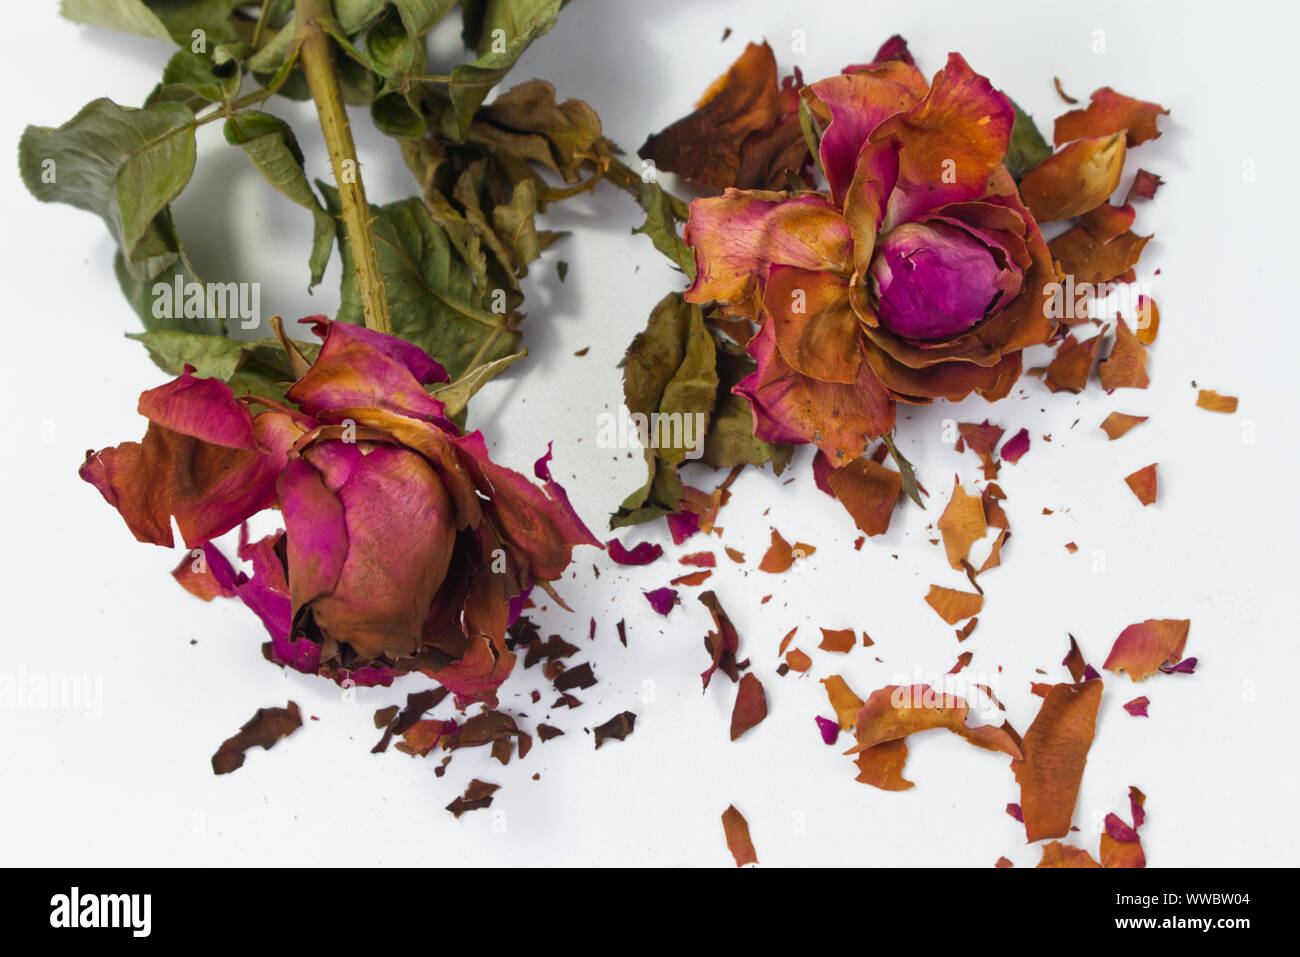 Roses rouges séchées avec des fractures de pétales de rose sur fond blanc. Concept pour le vieillissement de l'amour, amour amer. Banque D'Images